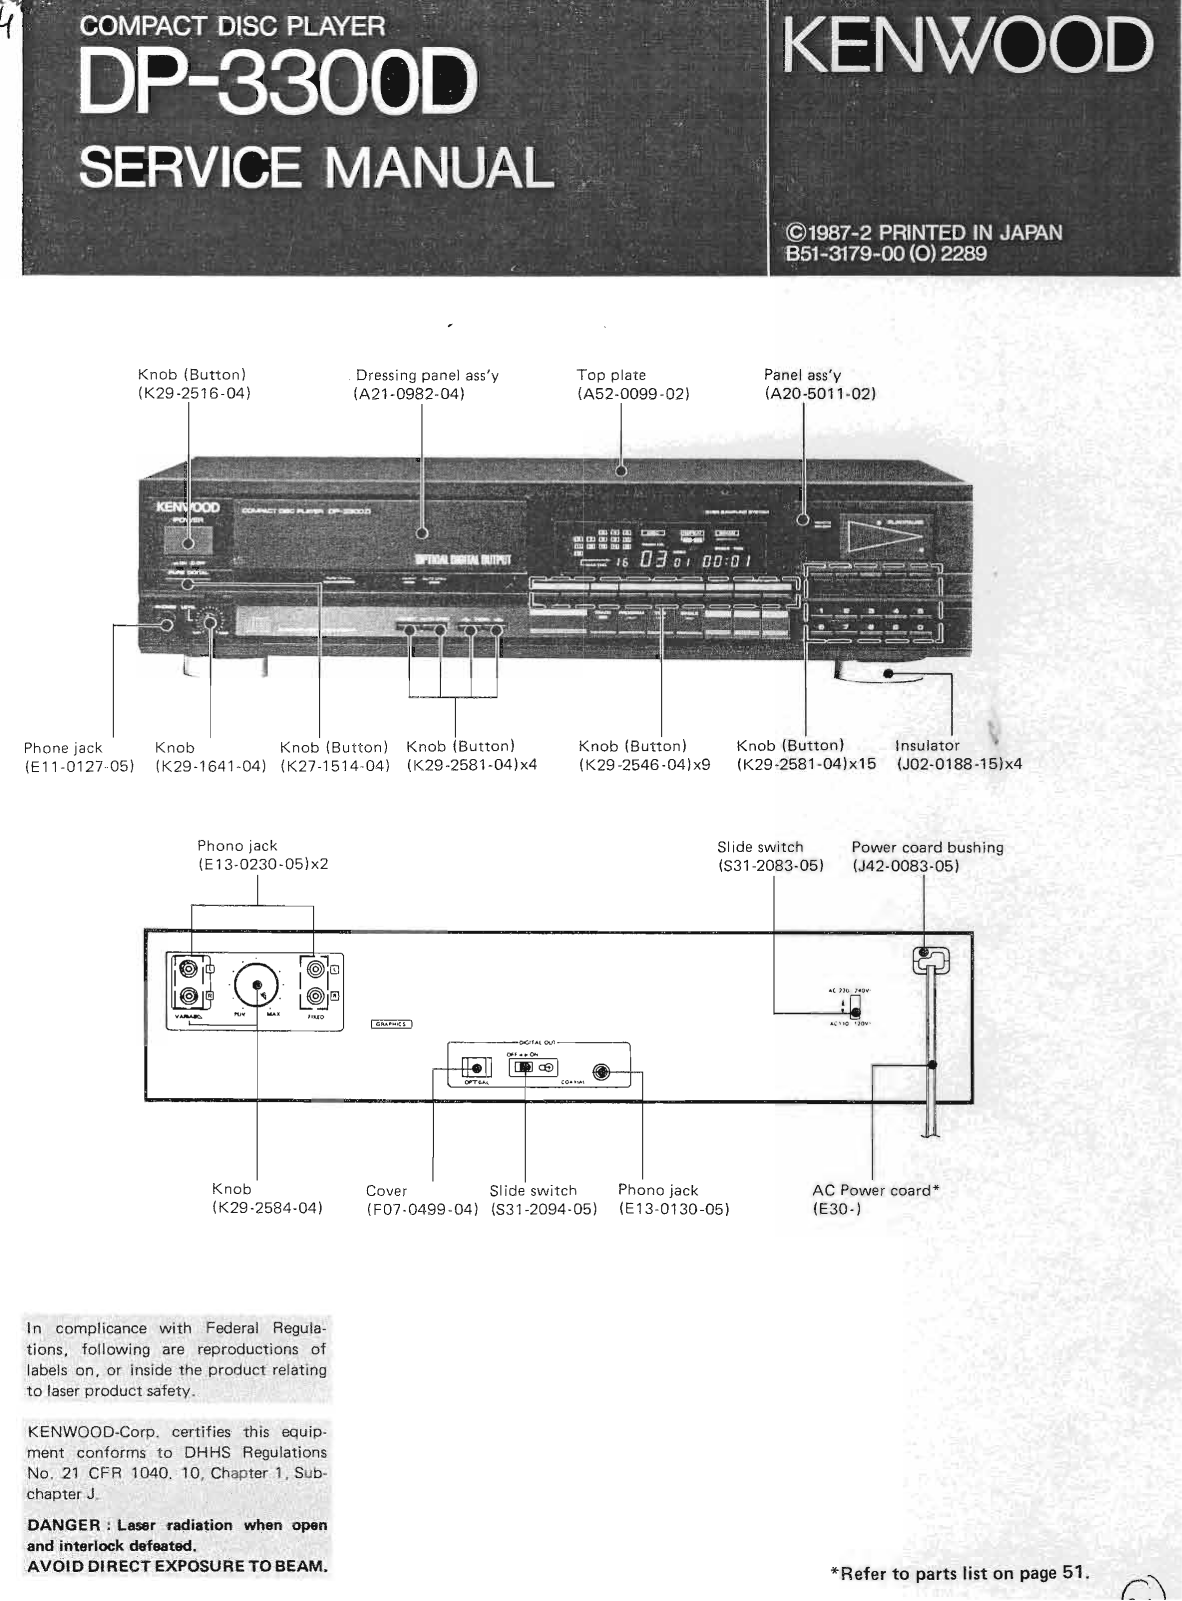 Kenwood DP-3300-D Service Manual